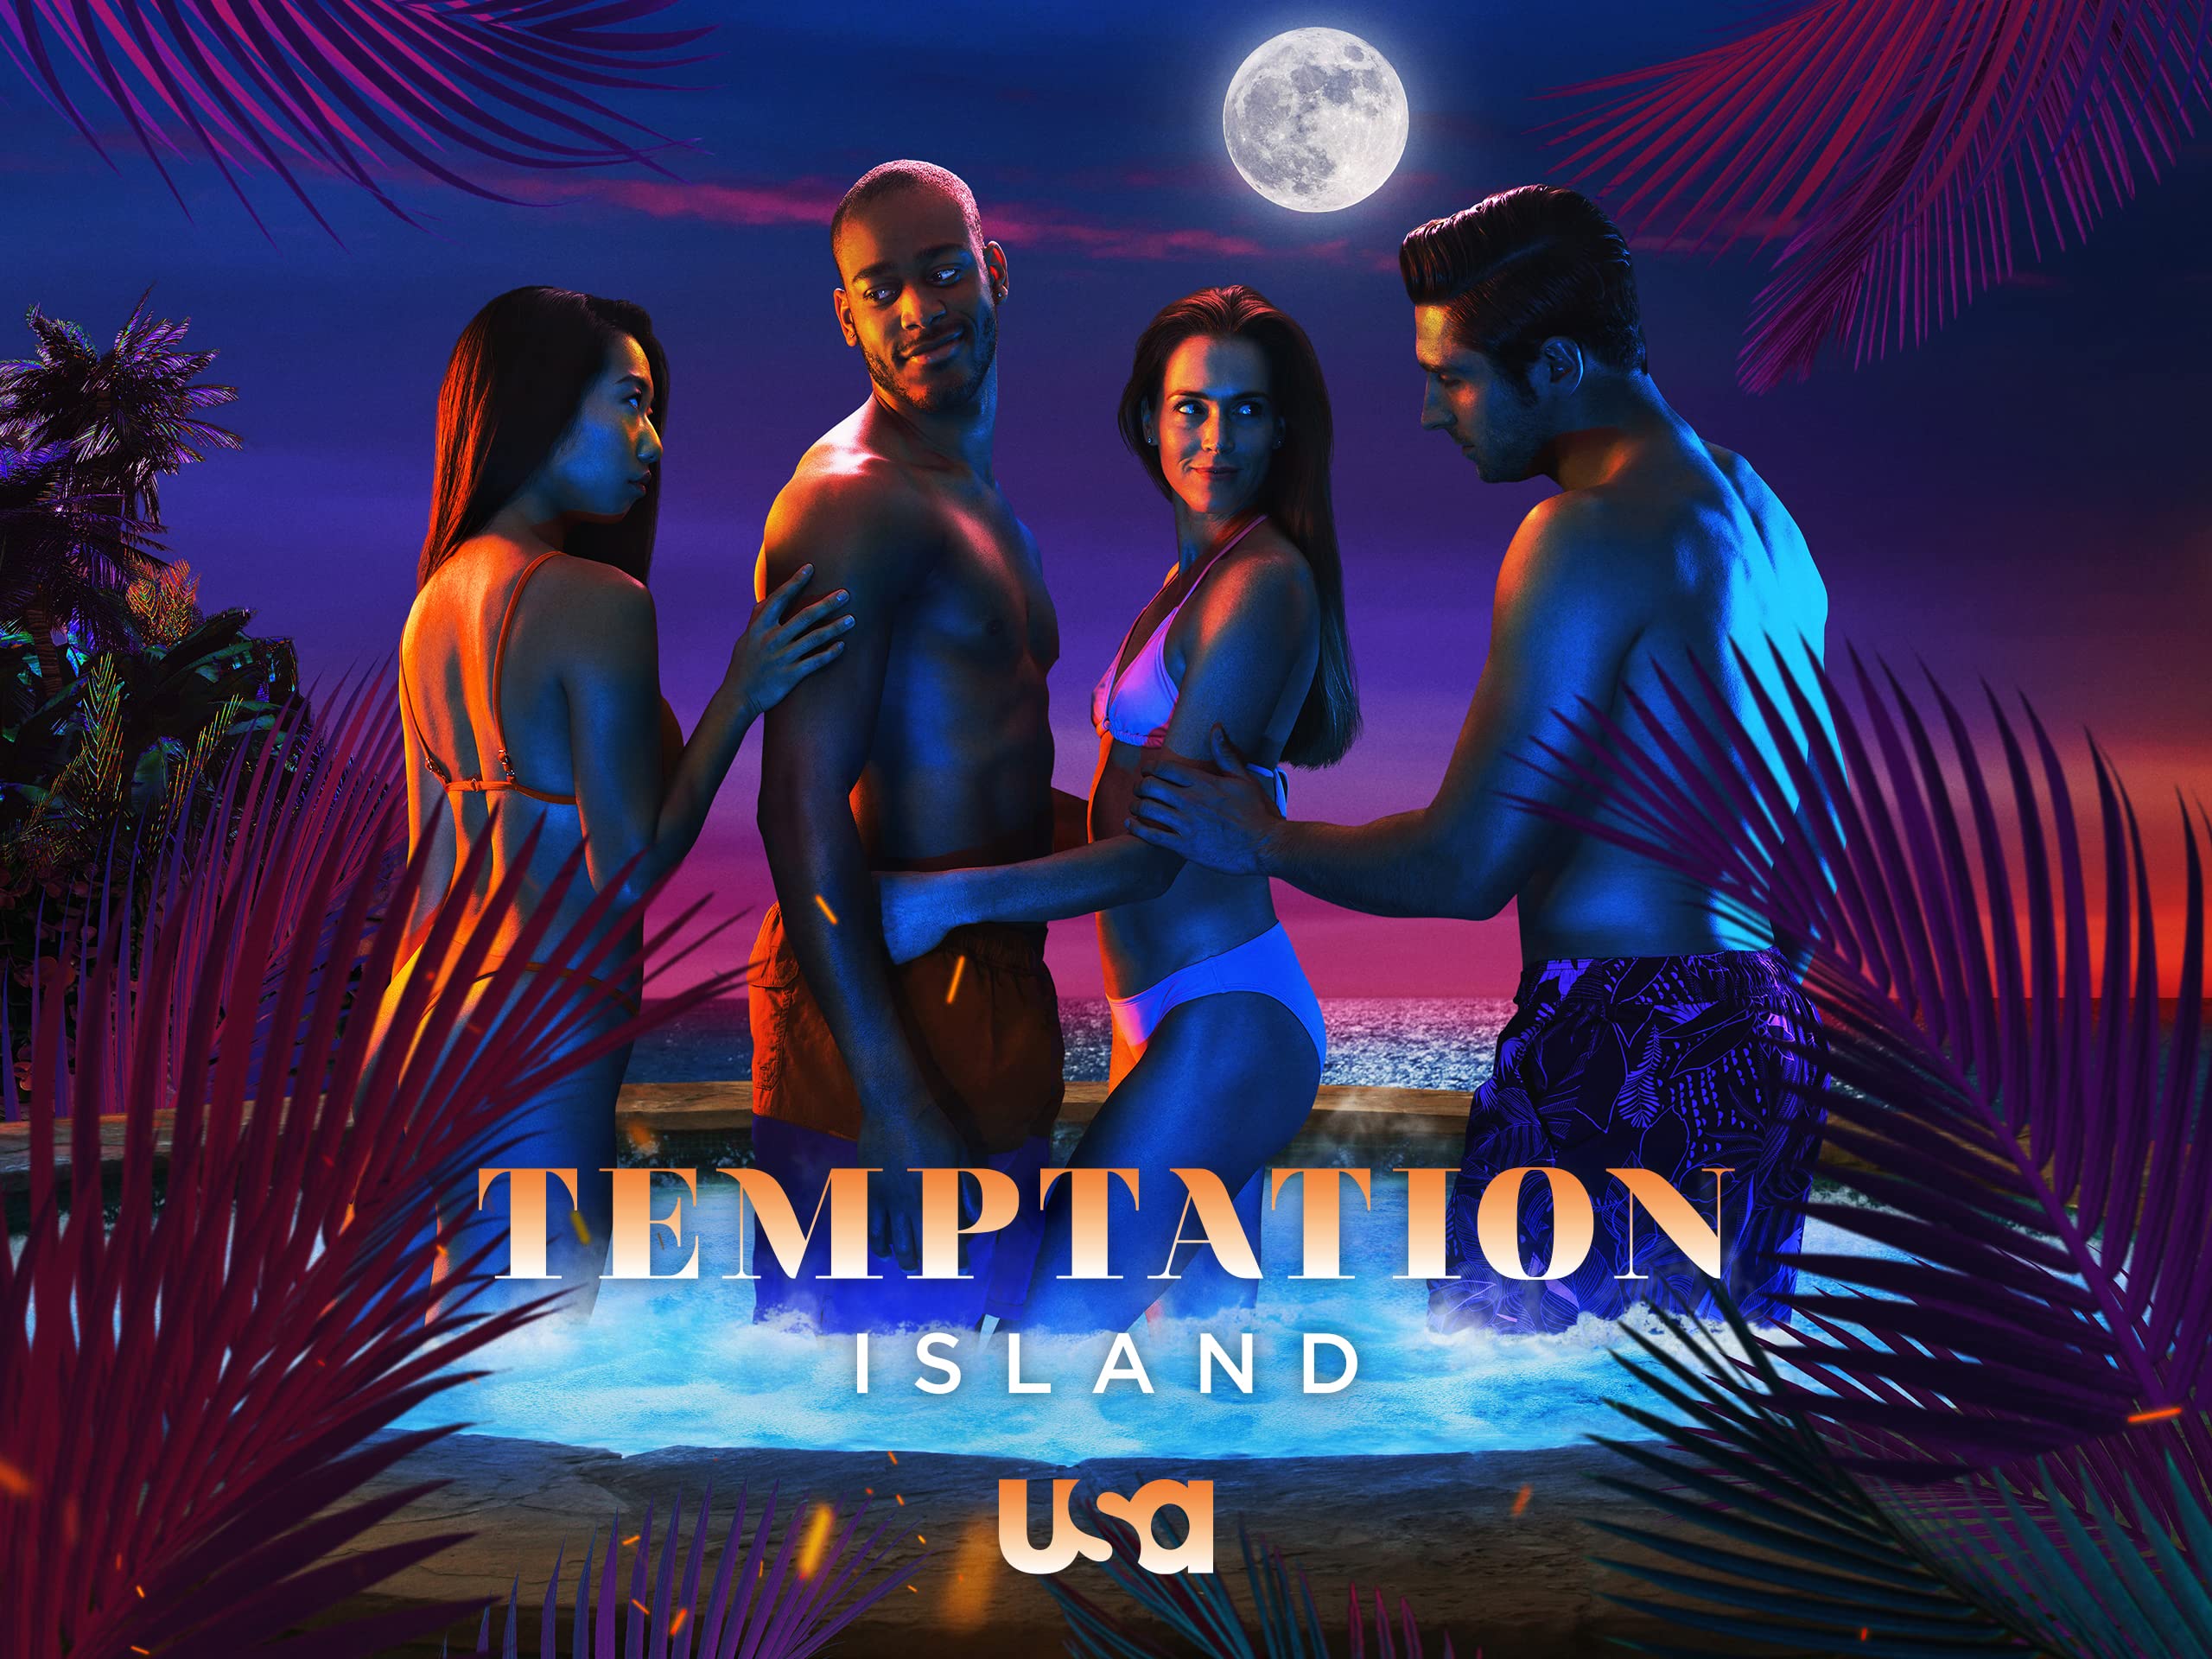 Temptation Island Season 04 Episode 10 Watch Free Online RushShows.